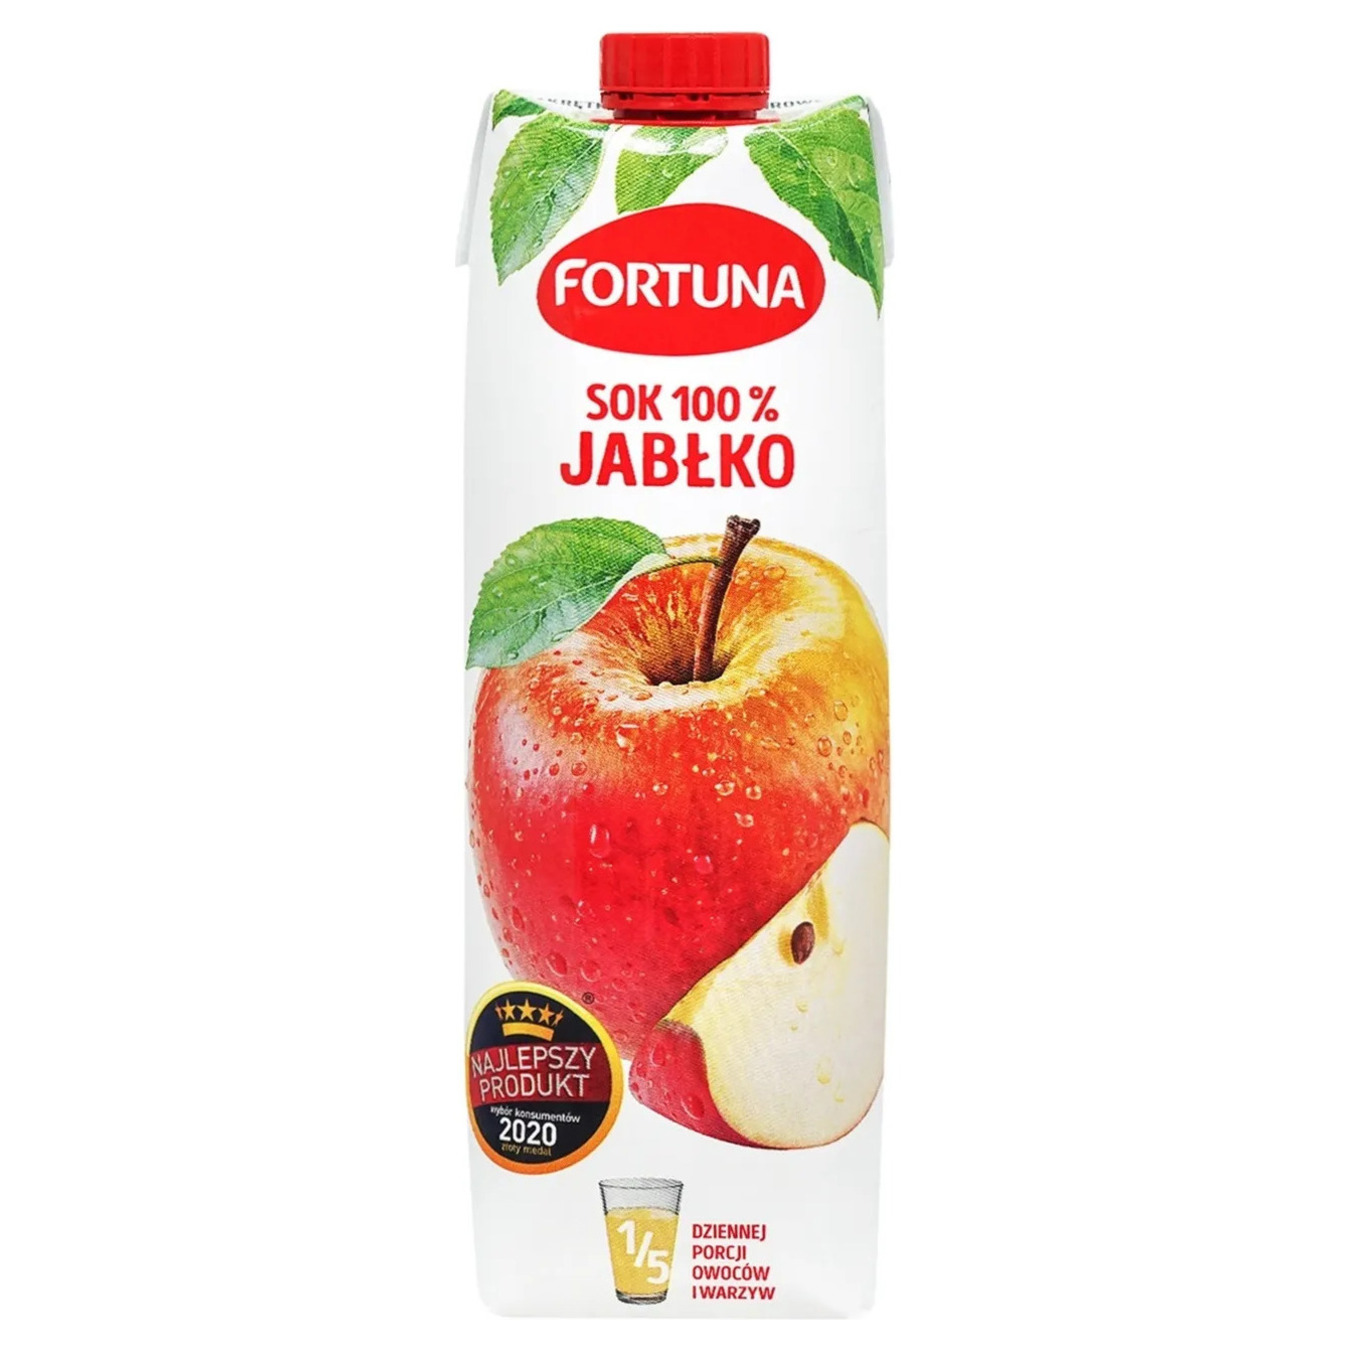 Fortuna apple juice 1 l